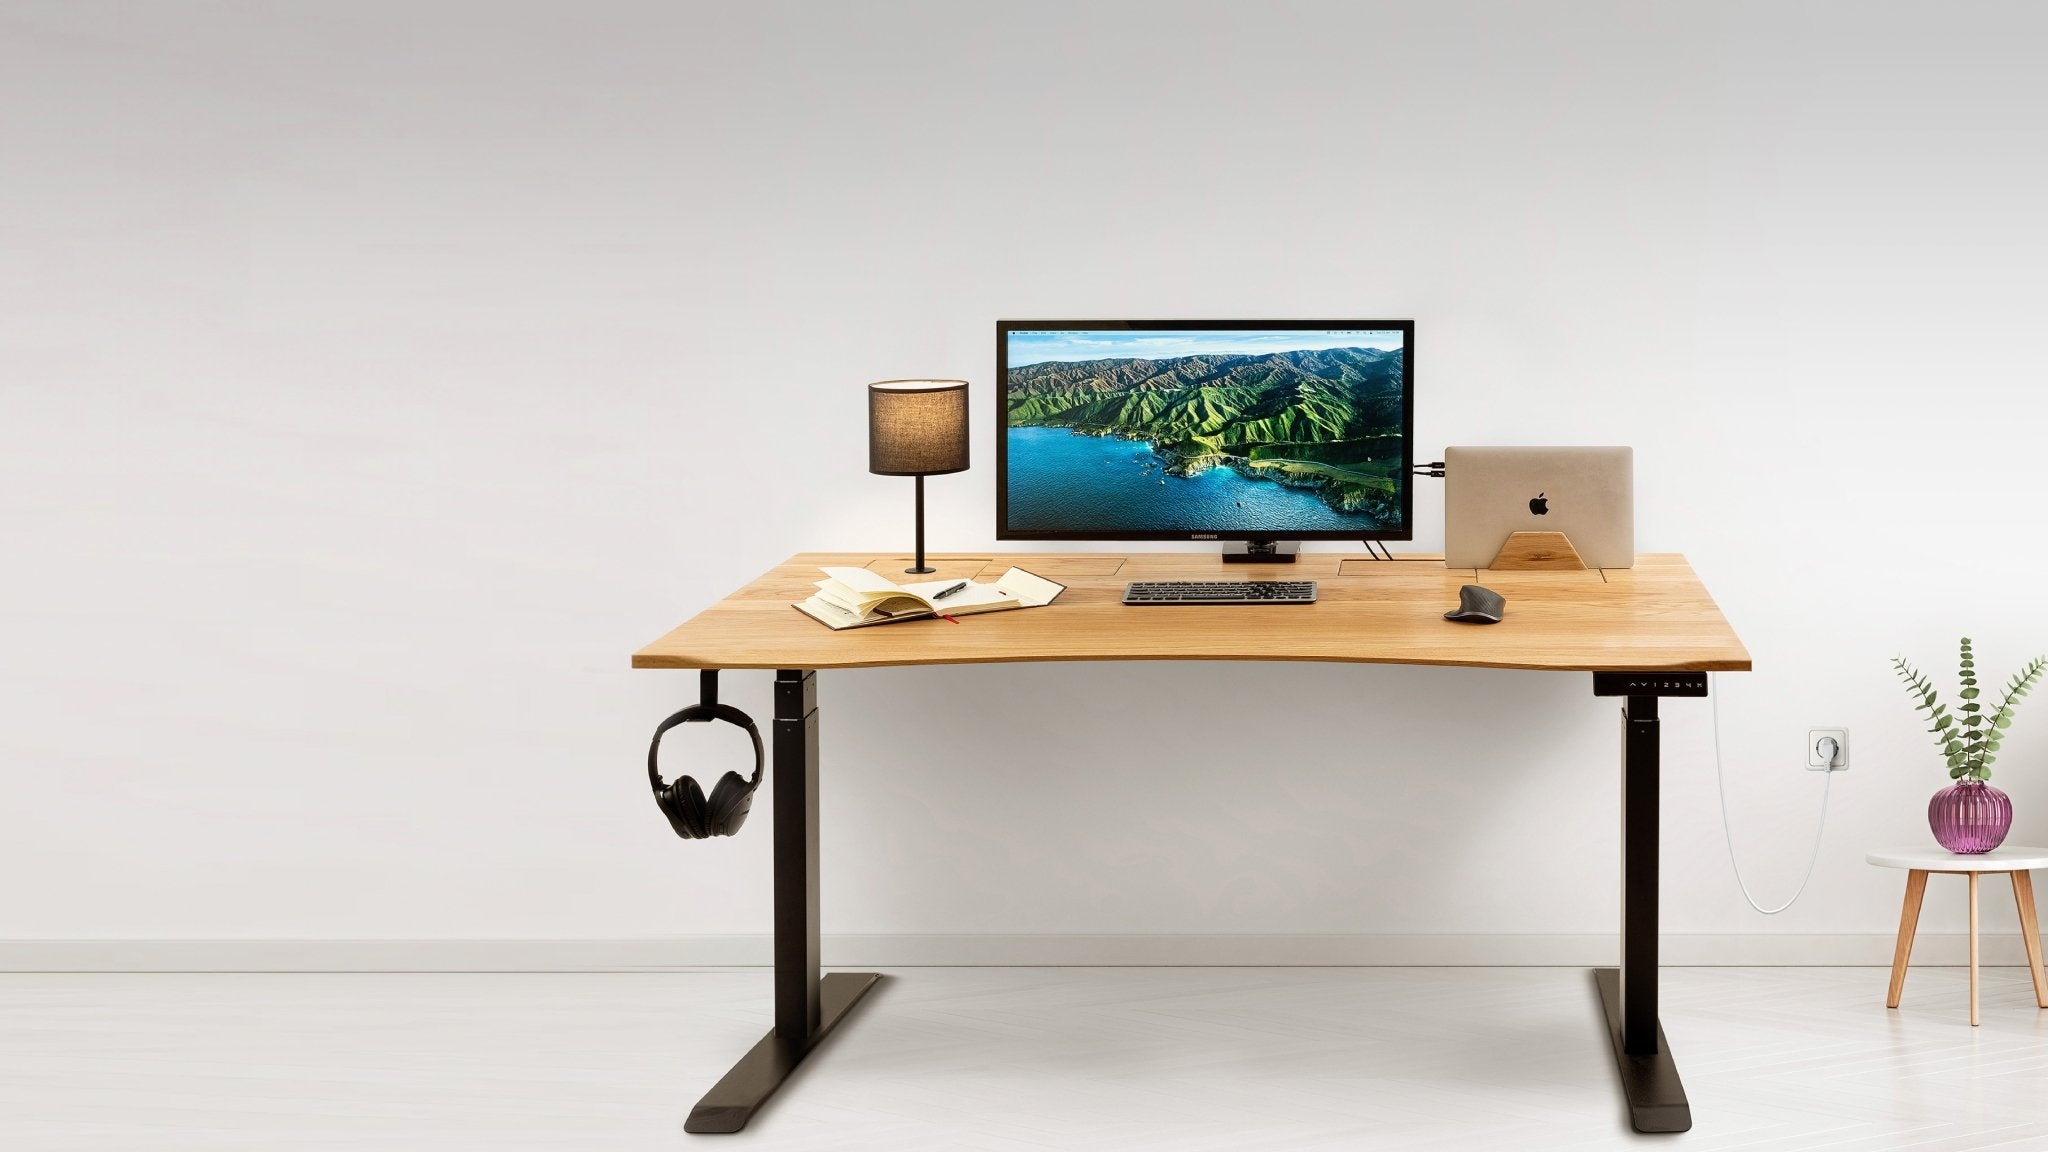 Cuál es la altura ideal de tu escritorio?